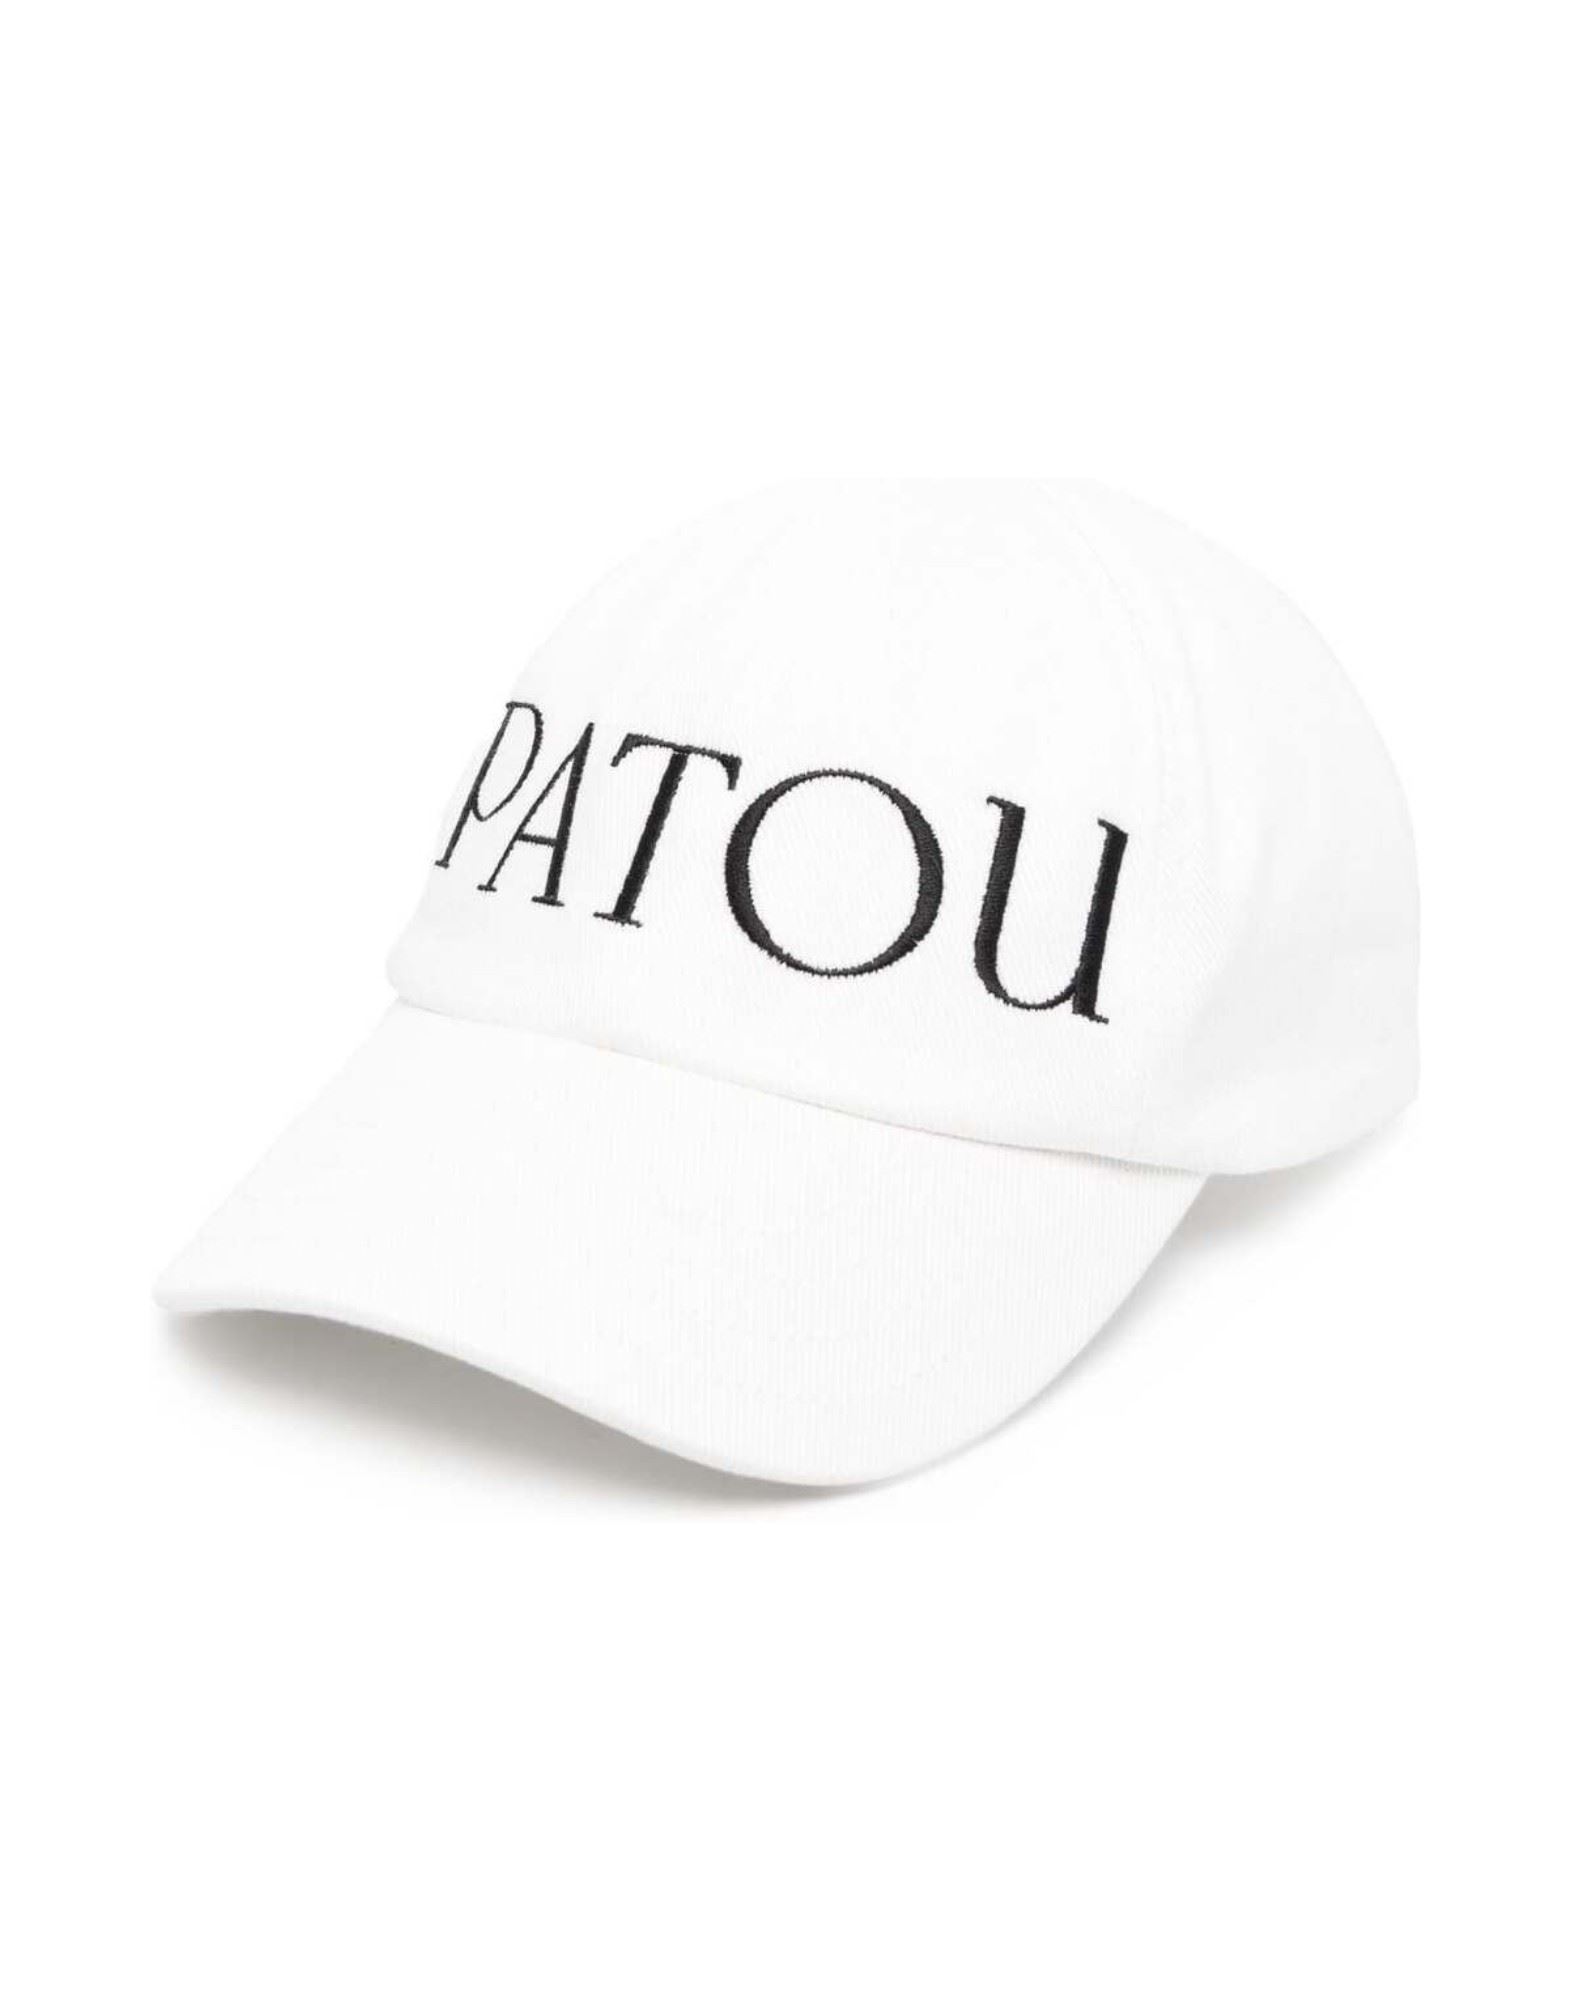 PATOU Mützen & Hüte Damen Cremeweiß von PATOU